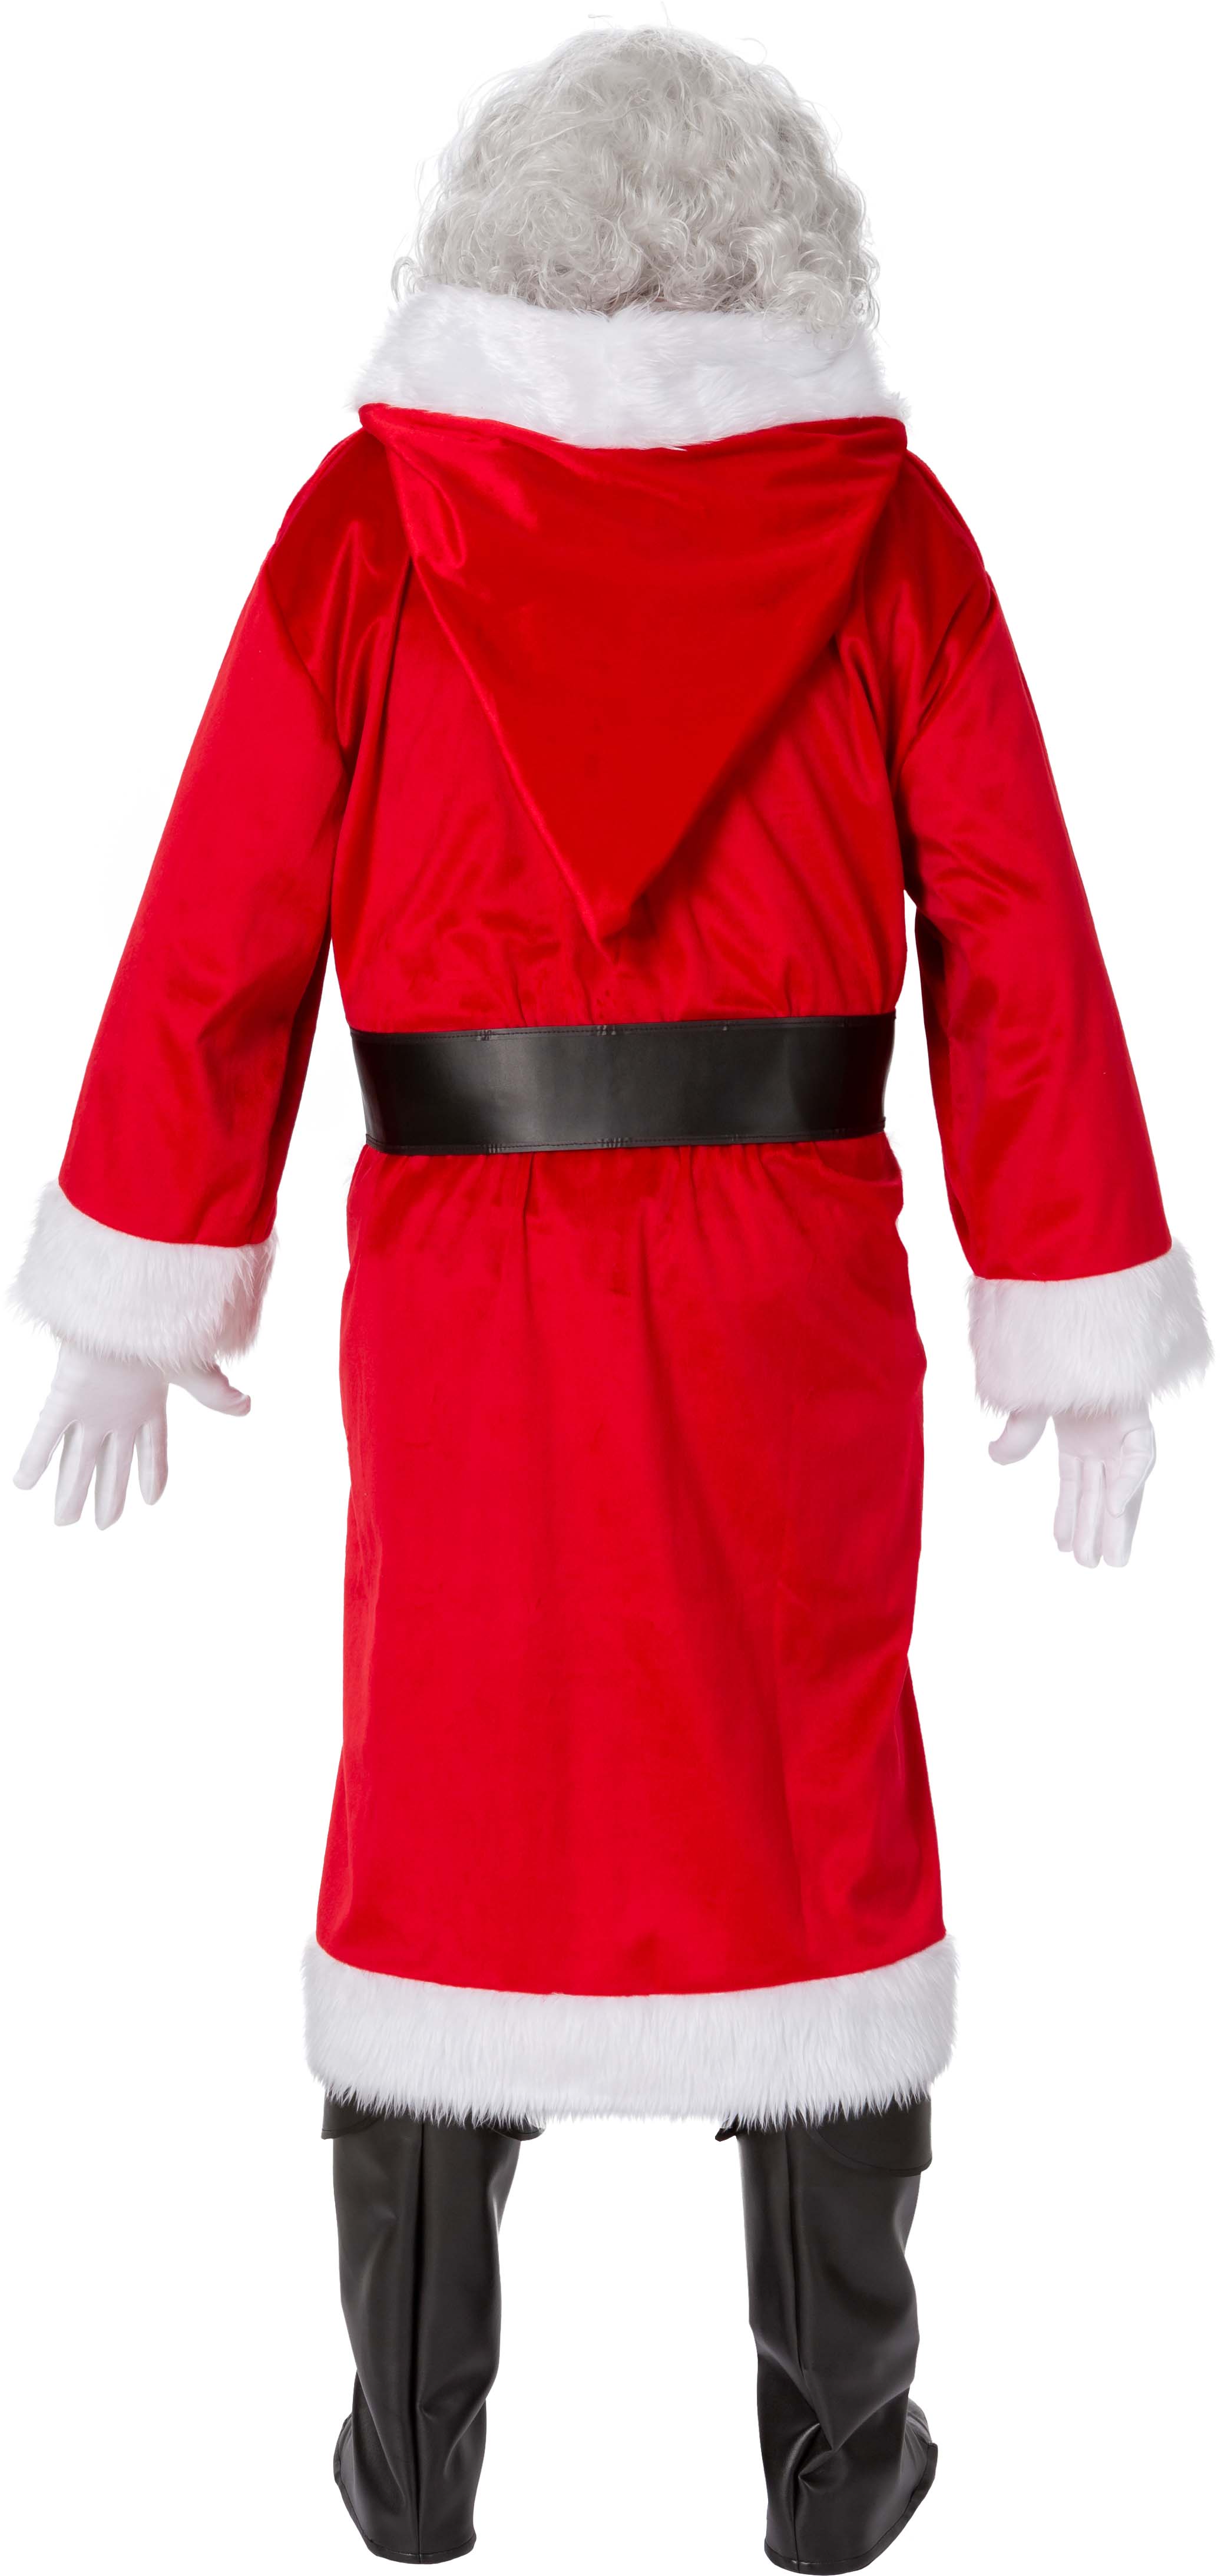 Santa coat, red